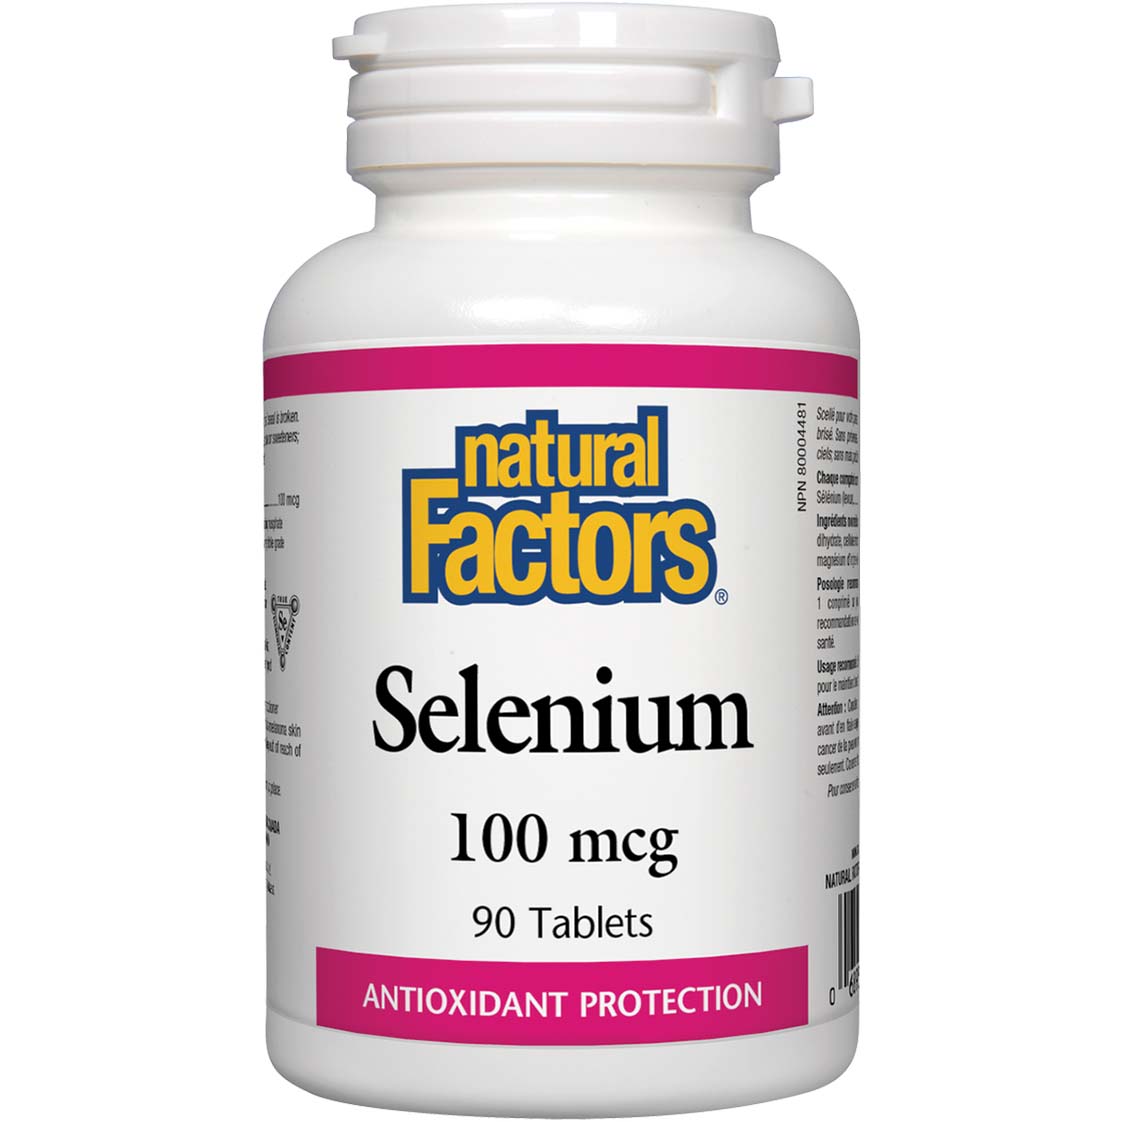 Natural Factors Selenium 90 Tablets 100 mcg